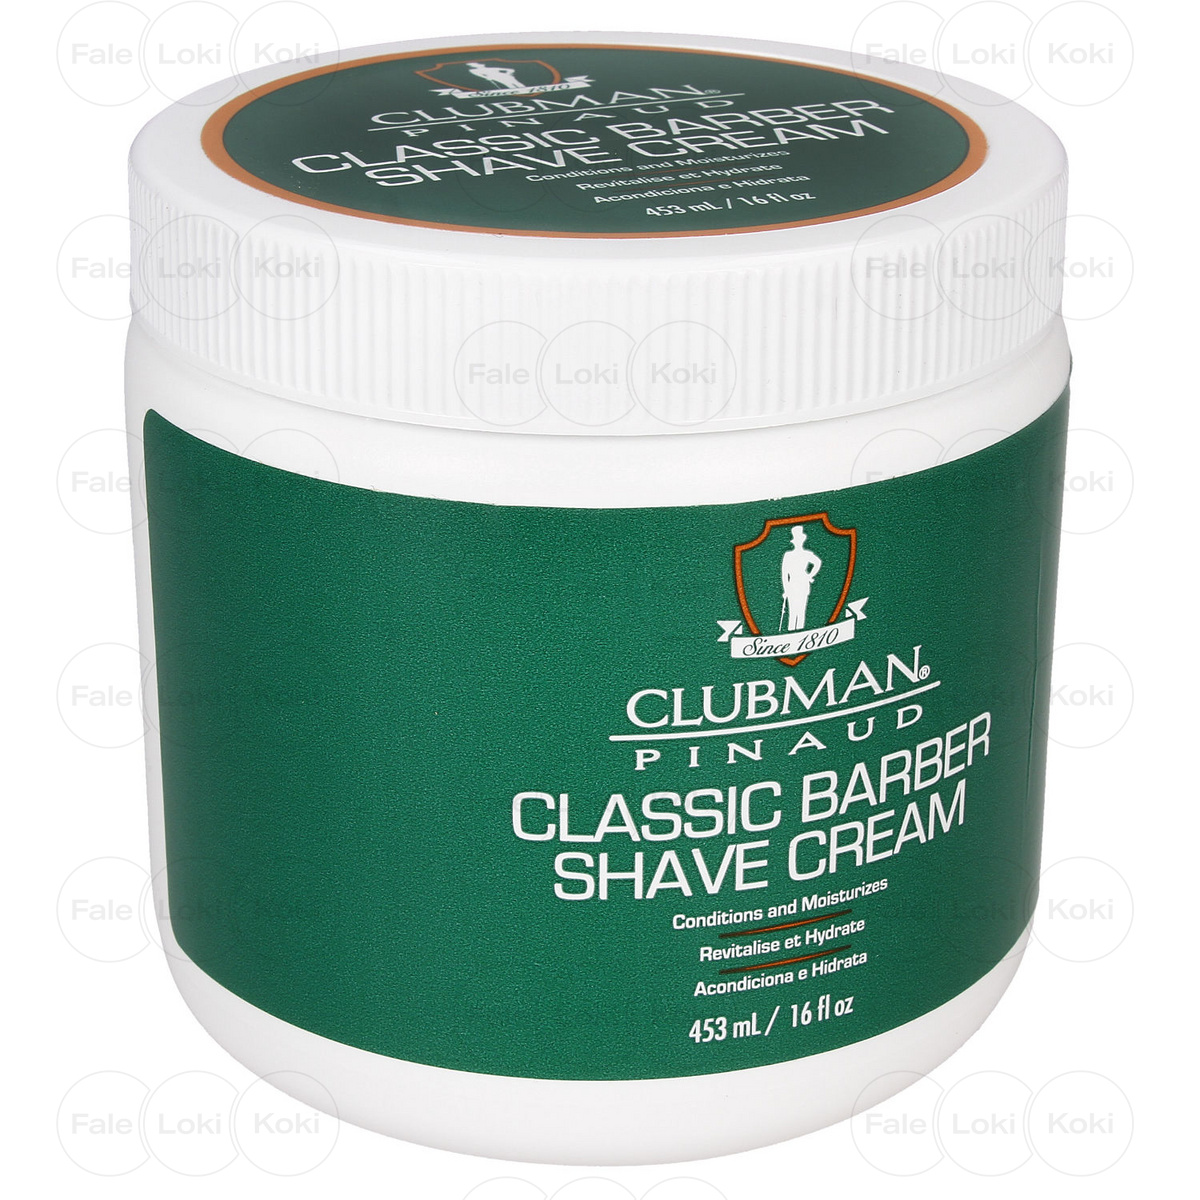 CLUBMAN krem do golenia Classic Barber shave cream 453 g